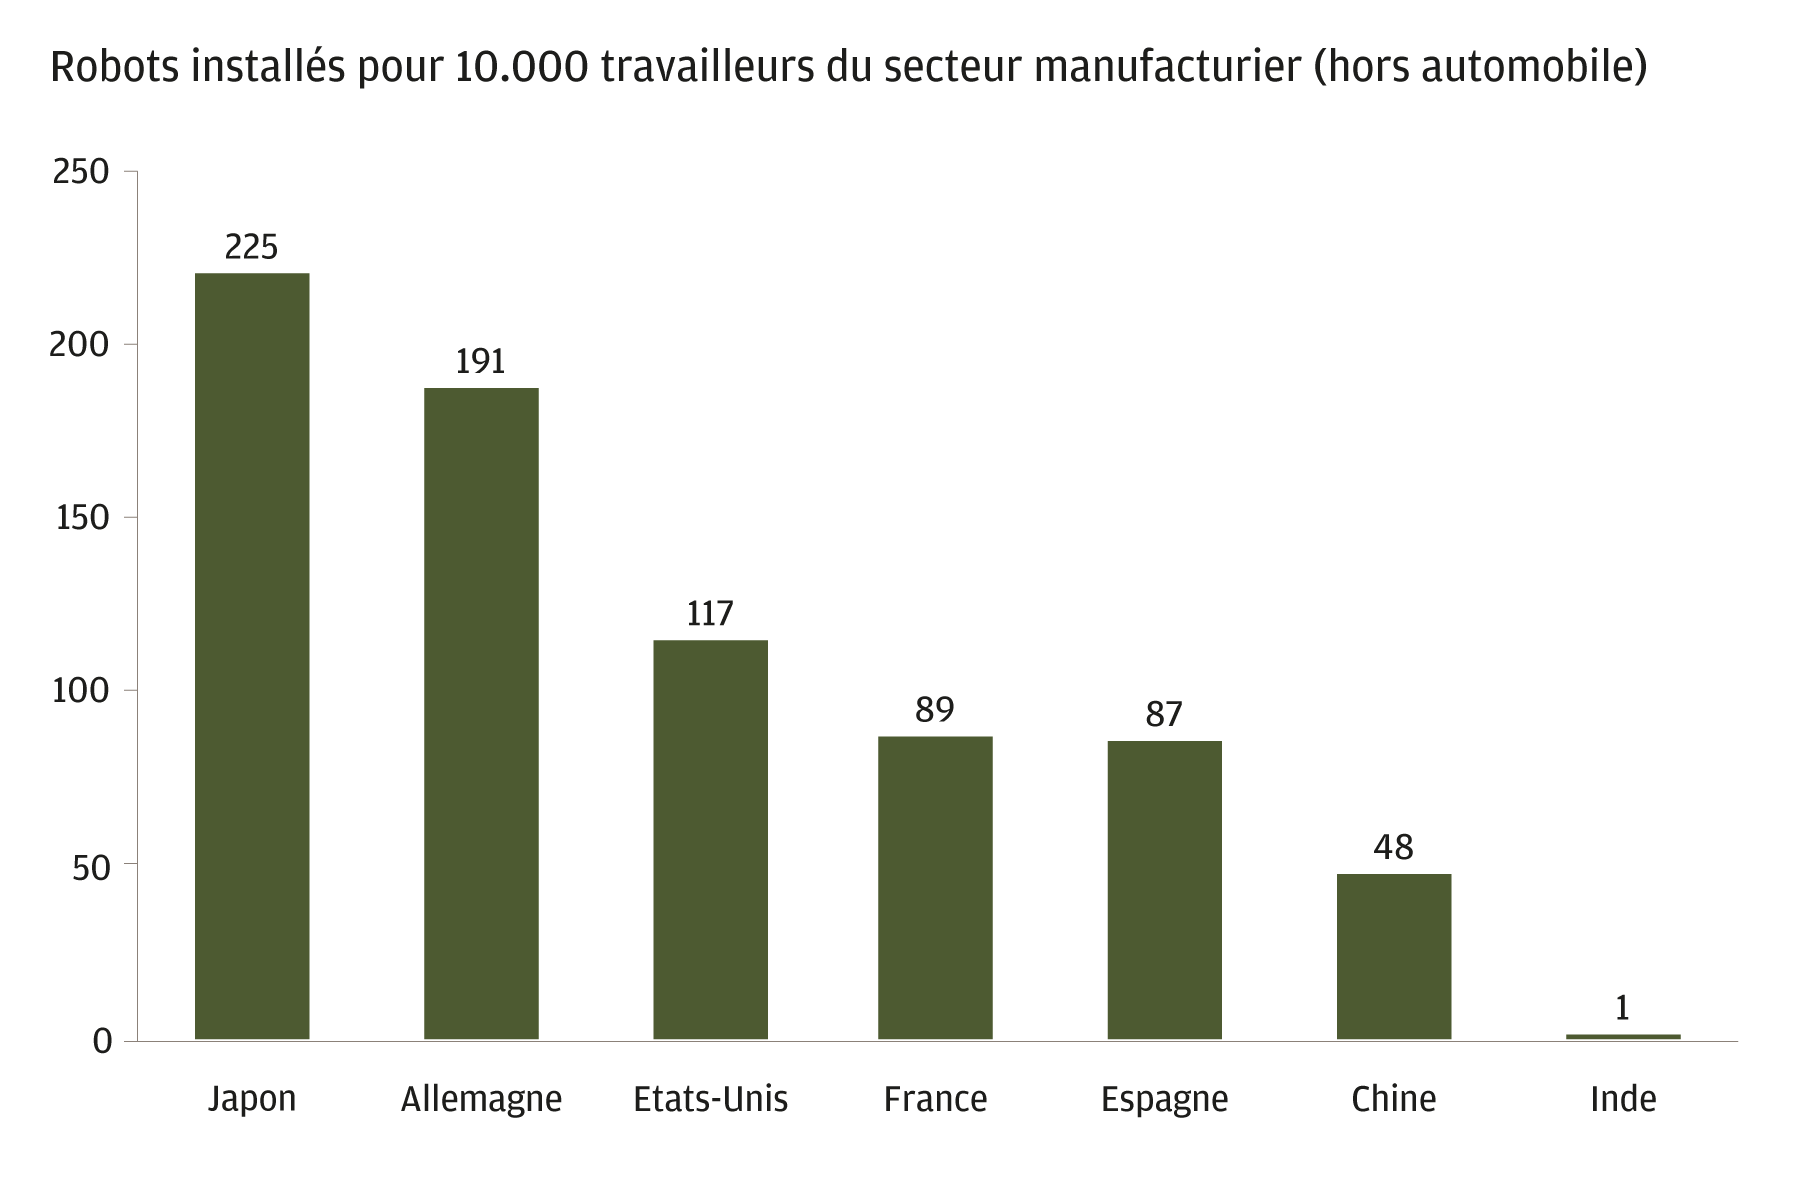 Ce graphique présente le nombre de robots installés pour 10.000 travailleurs dans l'industrie manufacturière au Japon, en Allemagne, aux Etats-Unis, en France, en Espagne, en Chine et en Inde. Le Japon affiche le taux de pénétration le plus élevé, avec 225 robots industriels pour 10.000 travailleurs du secteur manufacturier, suivi de près par l'Allemagne. Les Etats-Unis, la France, l'Espagne et la Chine font état de pénétrations modérées avec une moyenne de 50-100. L'Inde est en retrait, avec un seul robot pour 10.000 travailleurs.